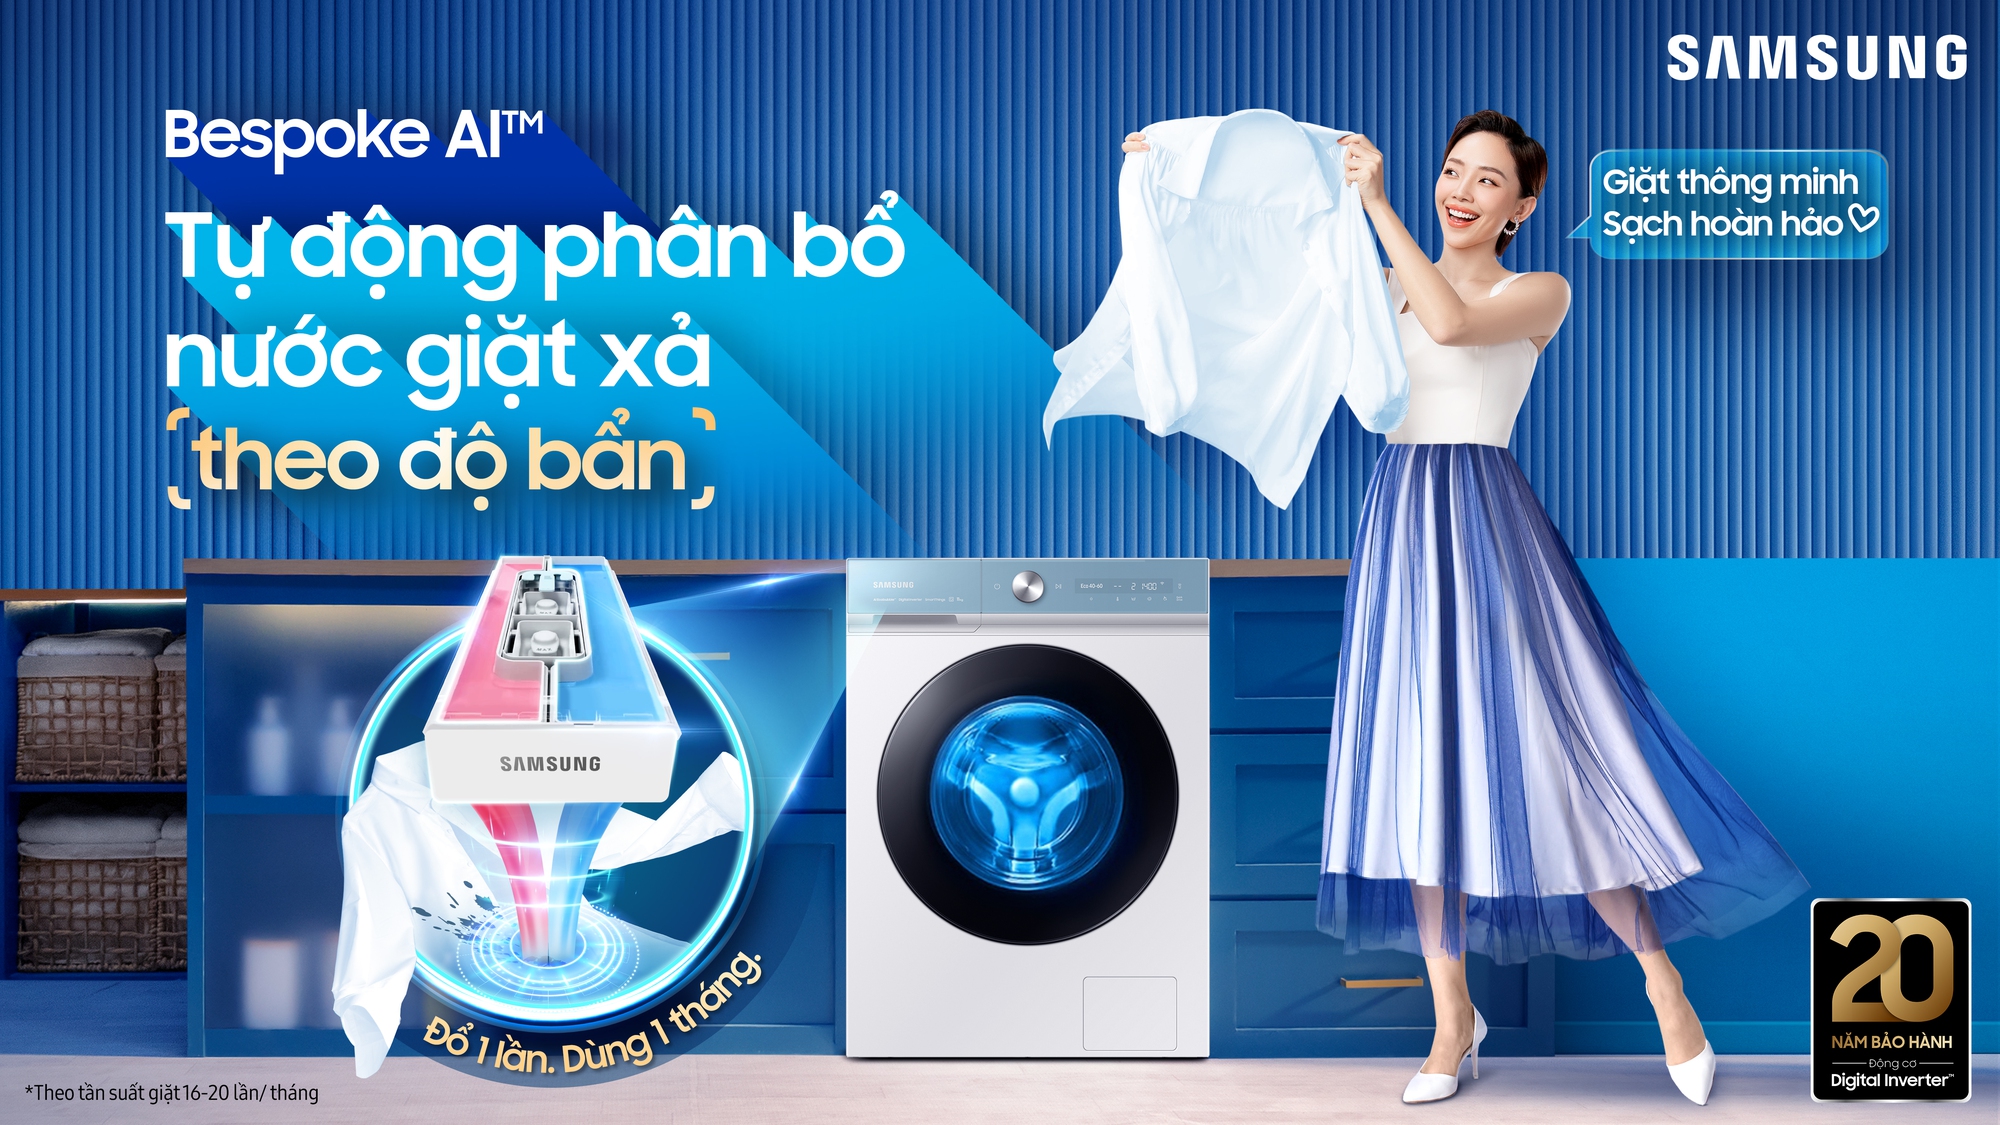 Máy giặt thông minh Samsung Bespoke AI ra mắt: Vừa phân biệt chất liệu vải, vừa tự động tính lượng nước giặt - Ảnh 1.